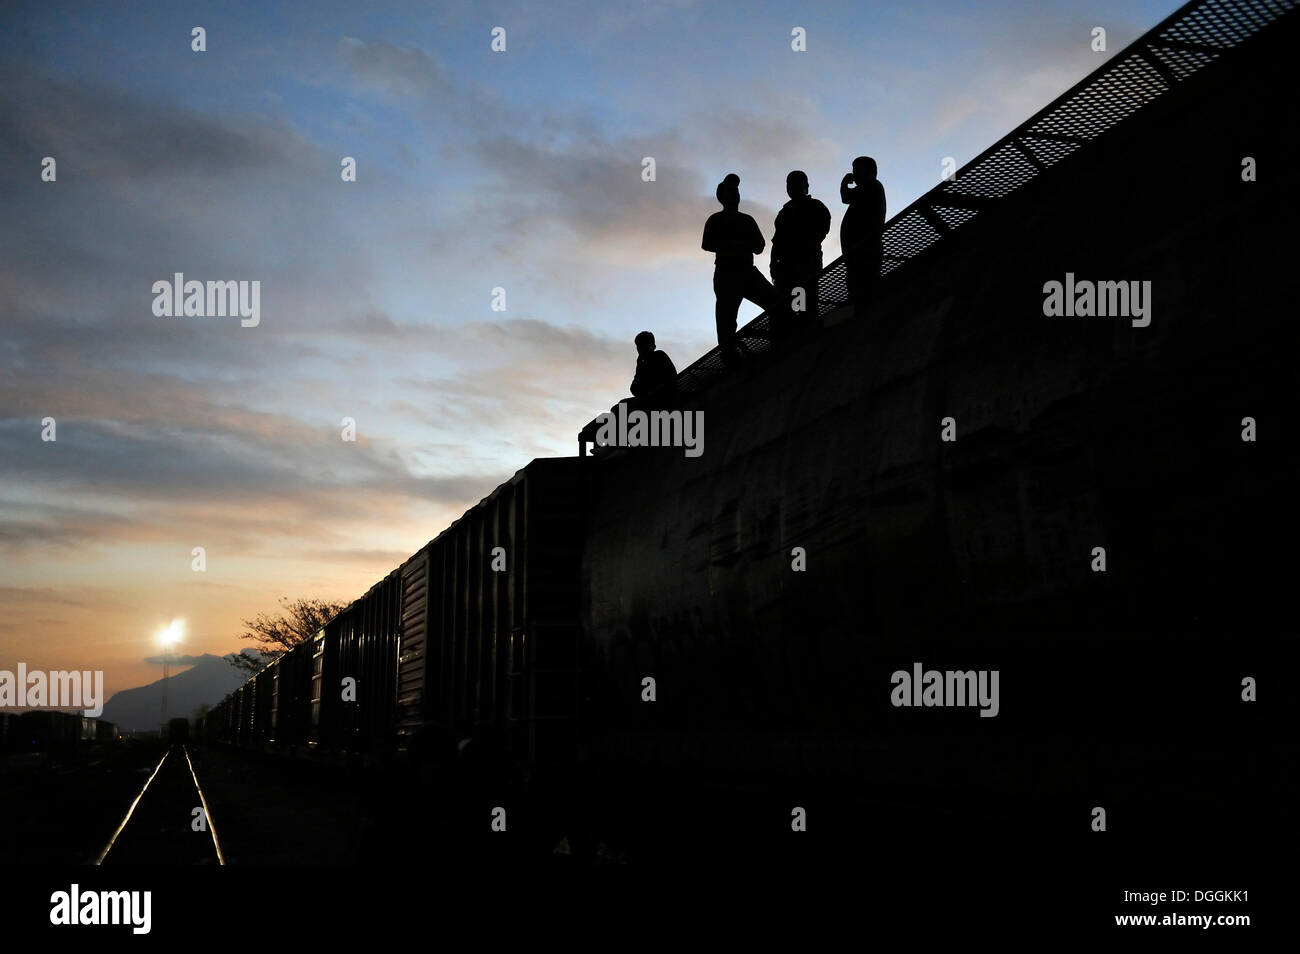 Illegale Einwanderer aus Lateinamerika auf dem Weg in die USA, die US-Grenze als blinde Passagiere auf Güterzüge erreichen möchten Stockfoto